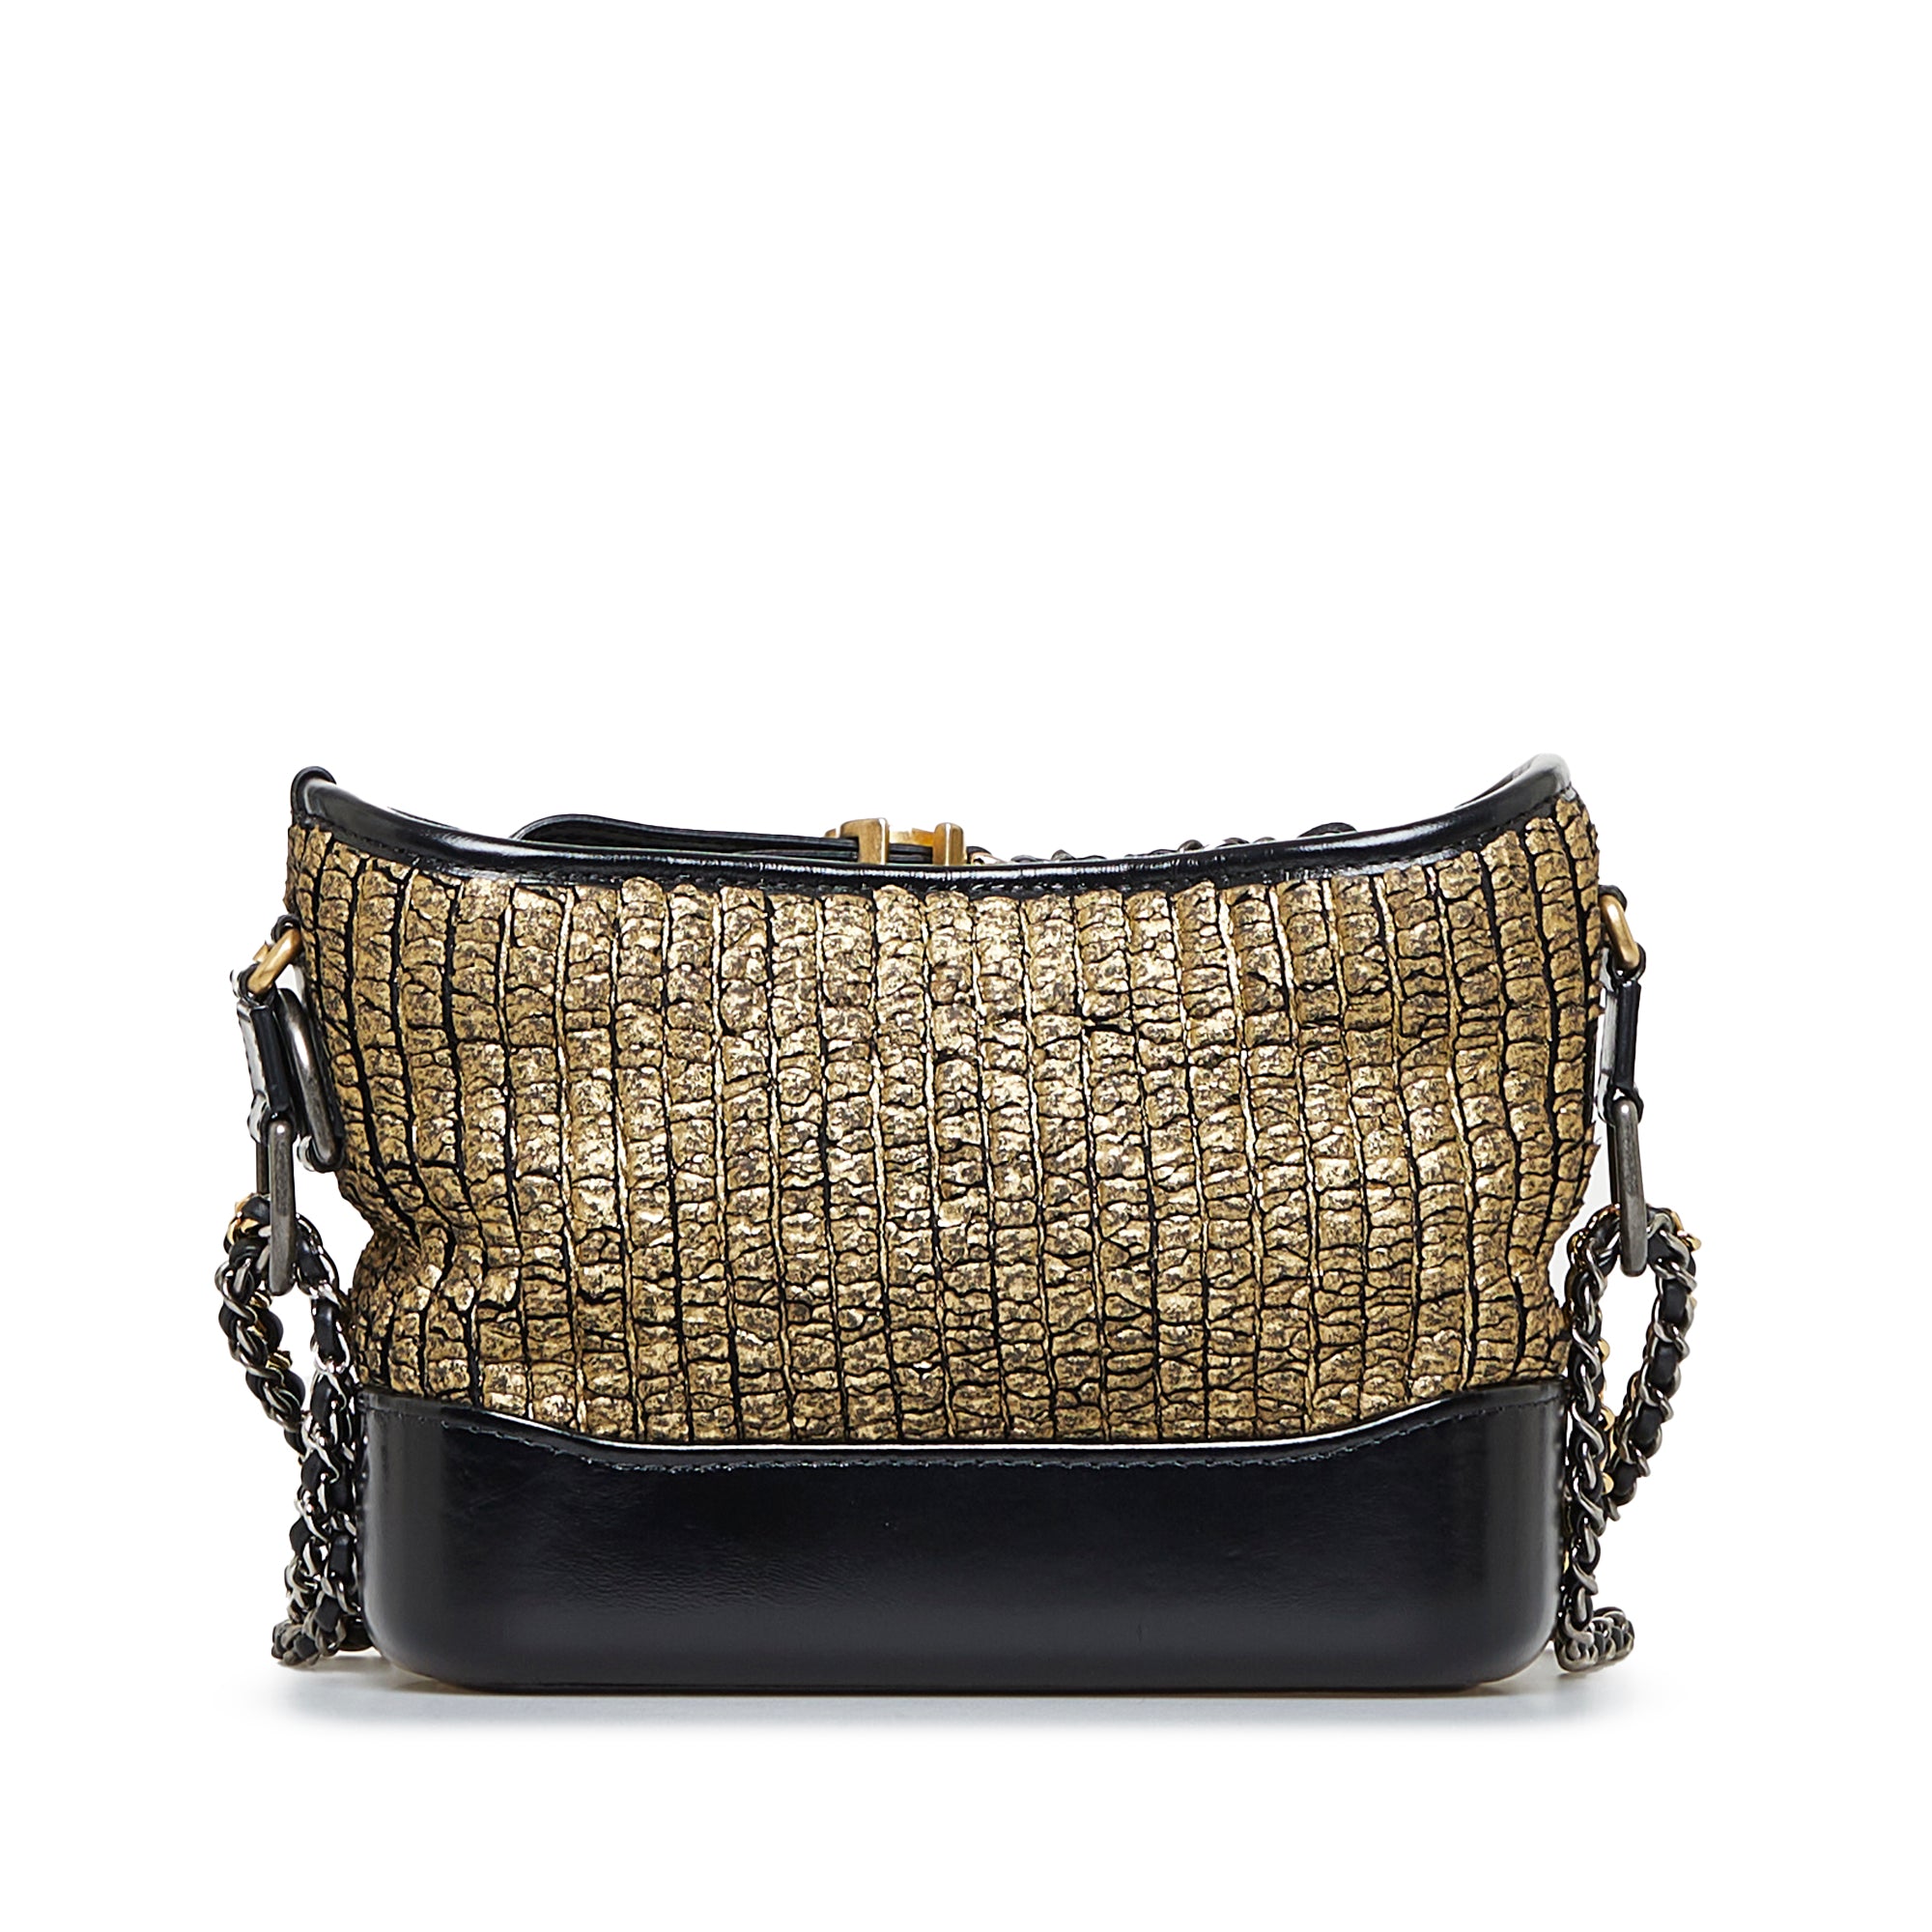 Chanel Black/Gold Gabrielle Shoulder Bag Chanel